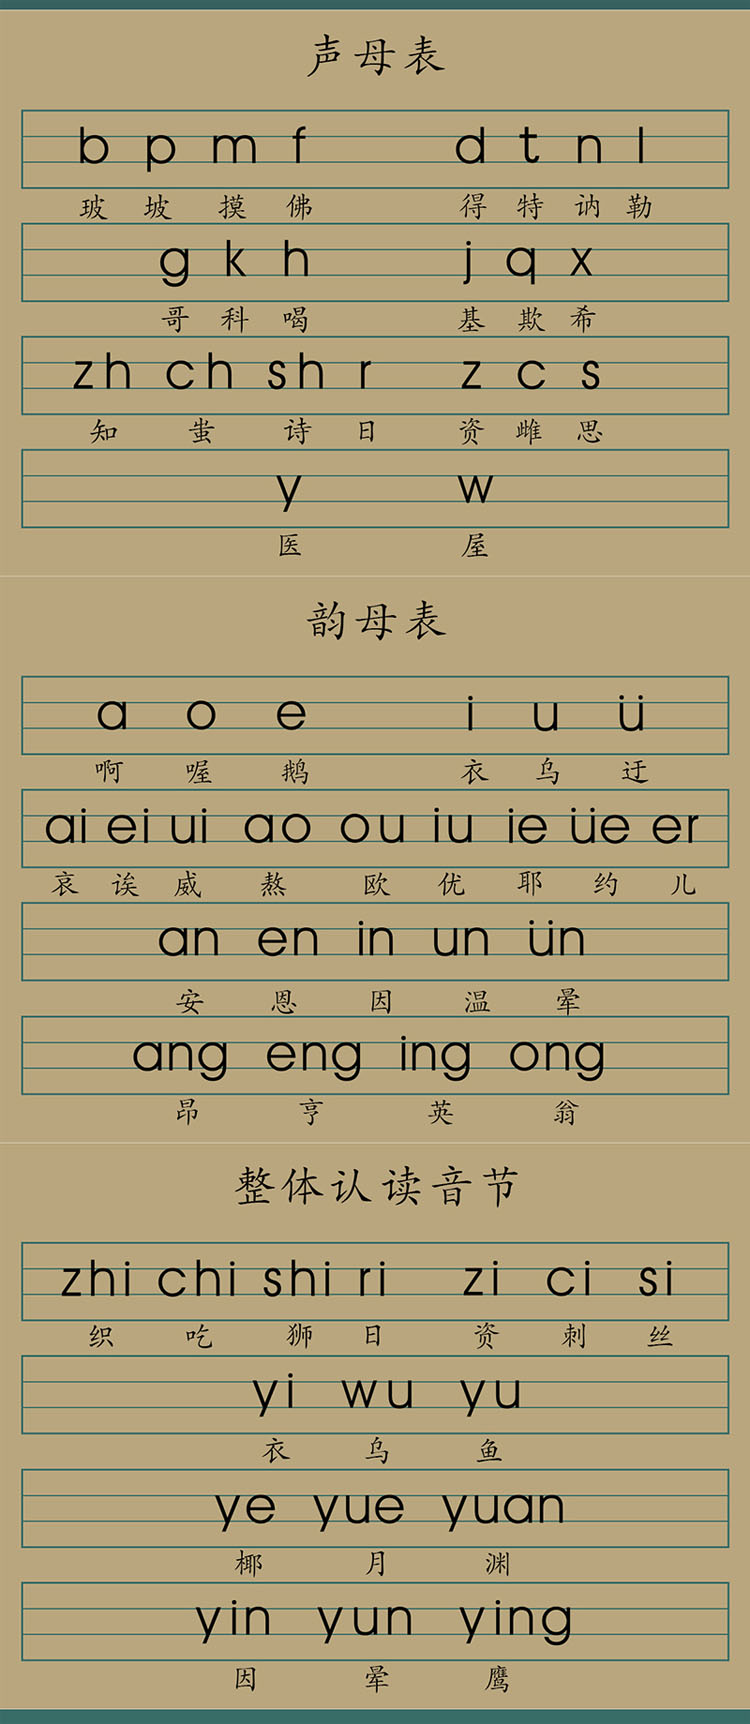 中文拼音字母表图片